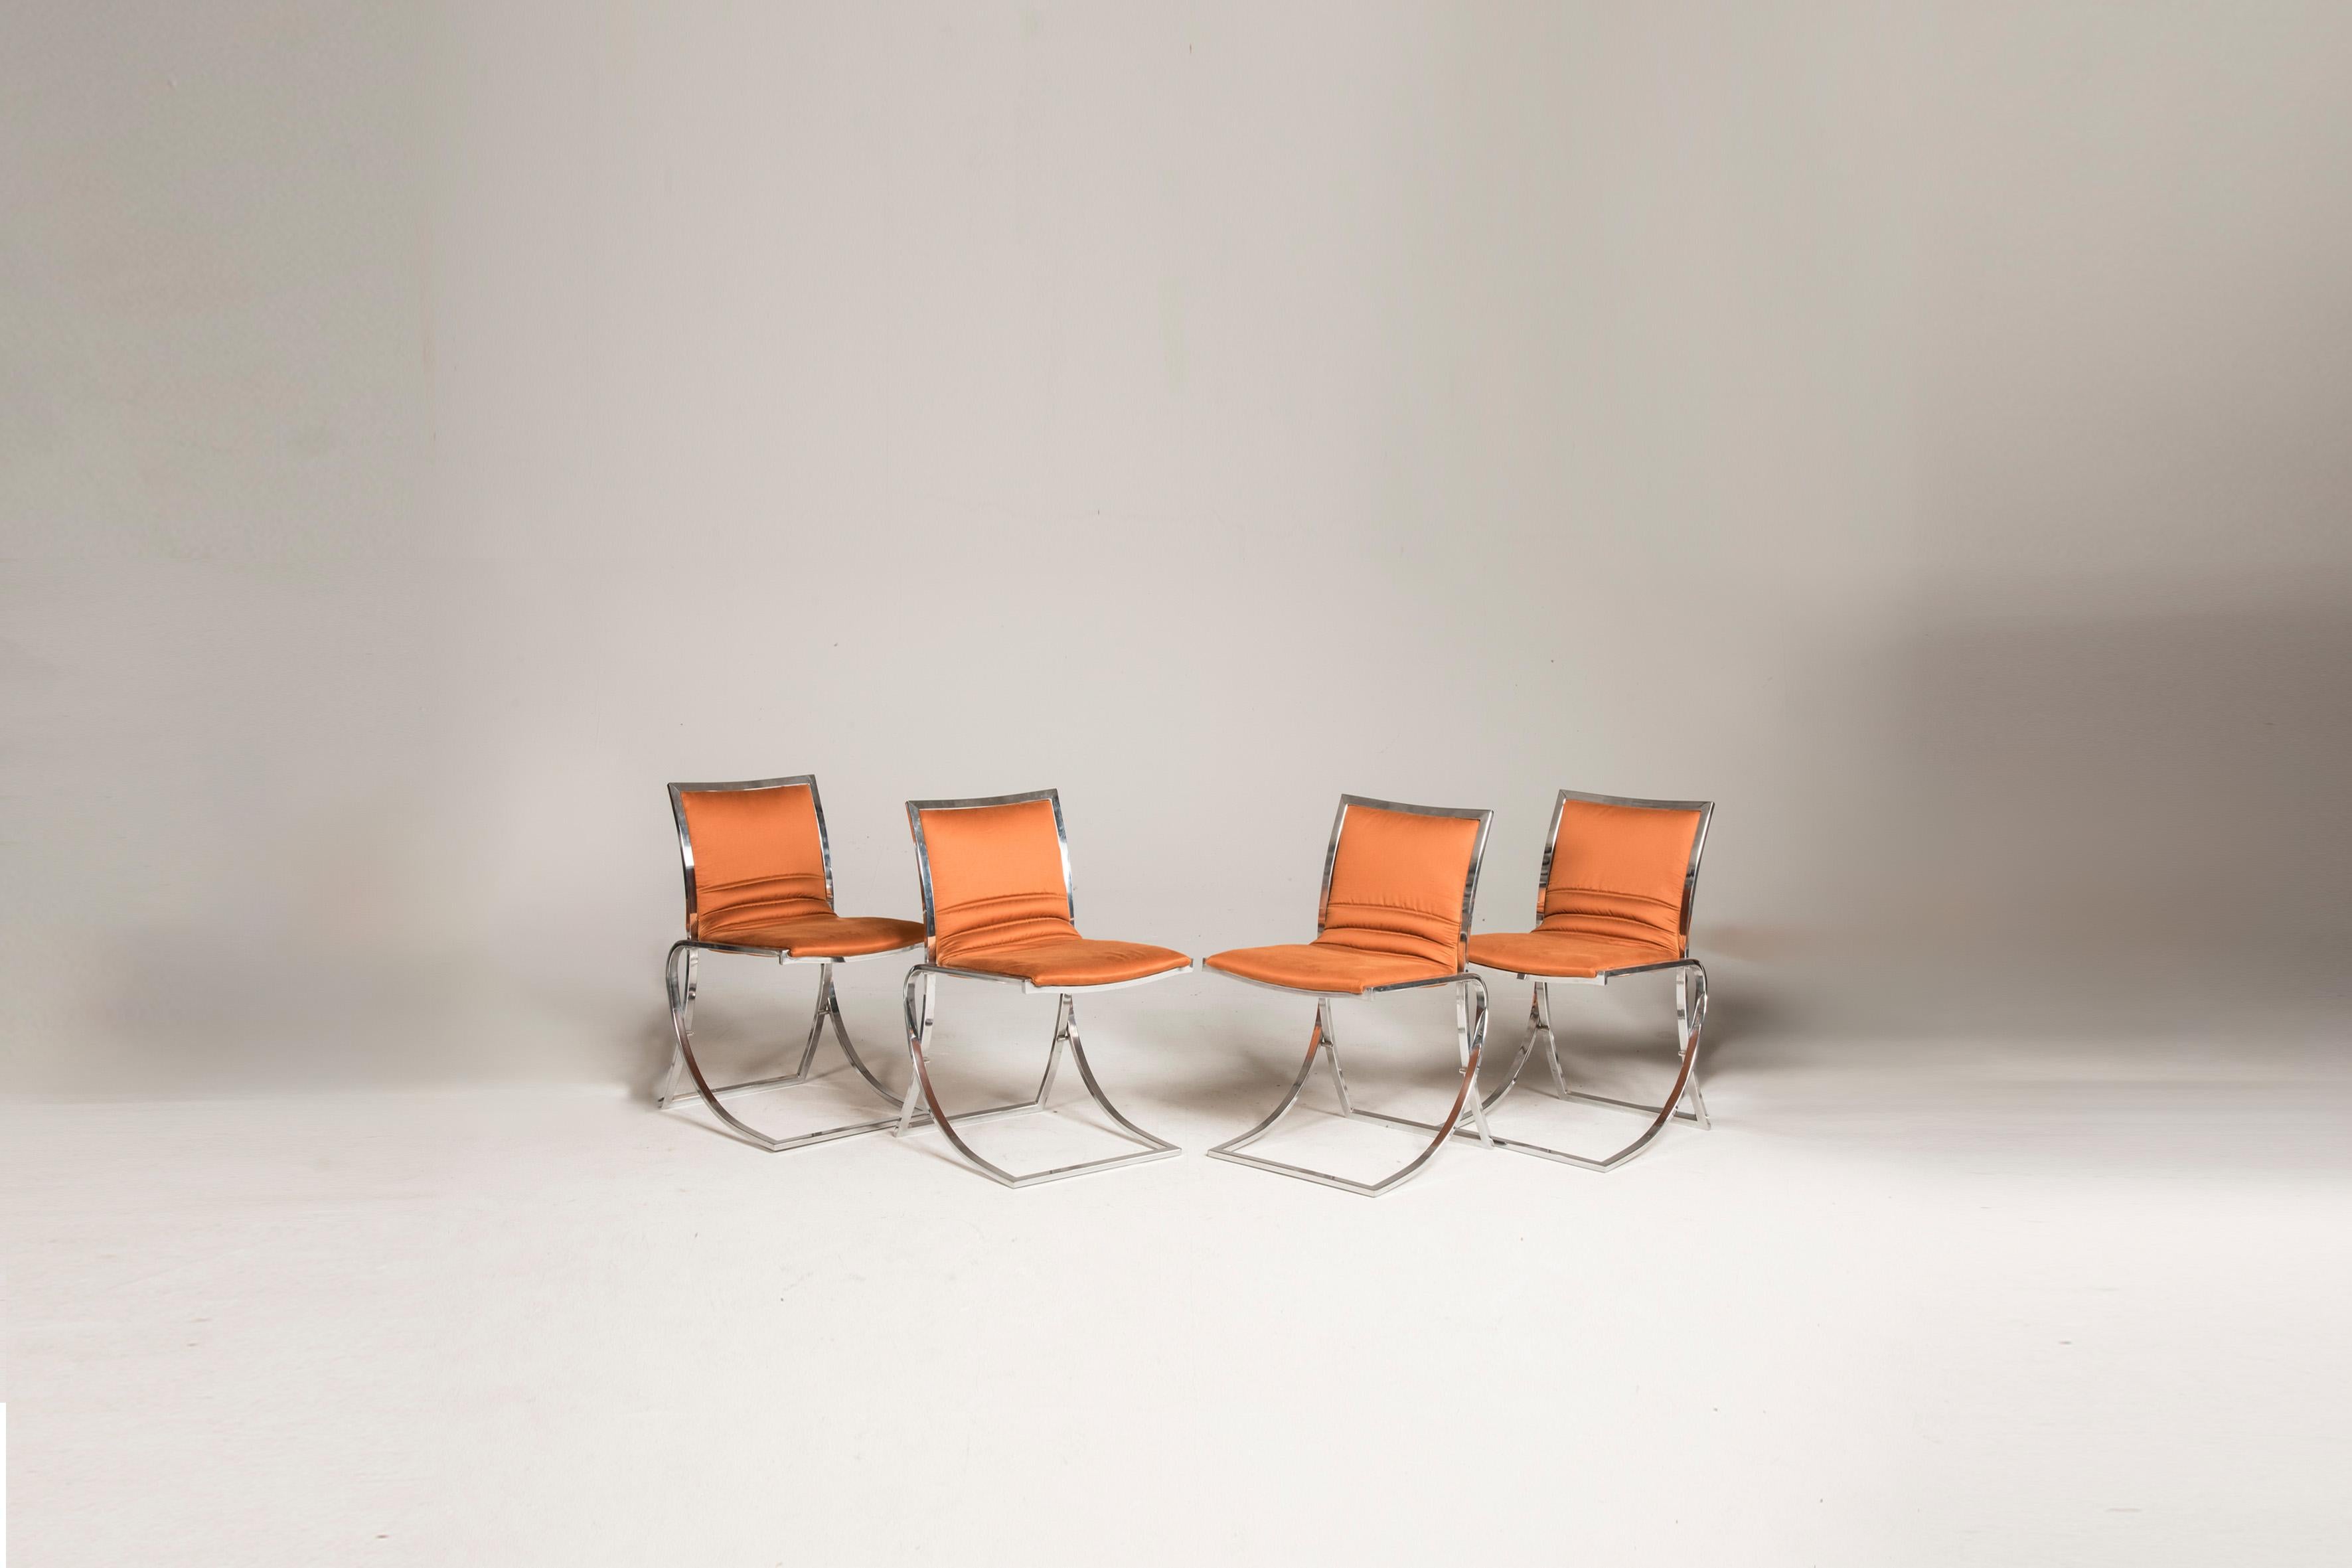 Ensemble de 4 chaises avec structure en acier chromé et sièges récemment retapissés en orange.

taille de chaque chaise : d 54 cm l 45 cm h 76 cm

À partir des années 1970

Etat : très bon, seulement de petites usures cohérentes avec l'âge et